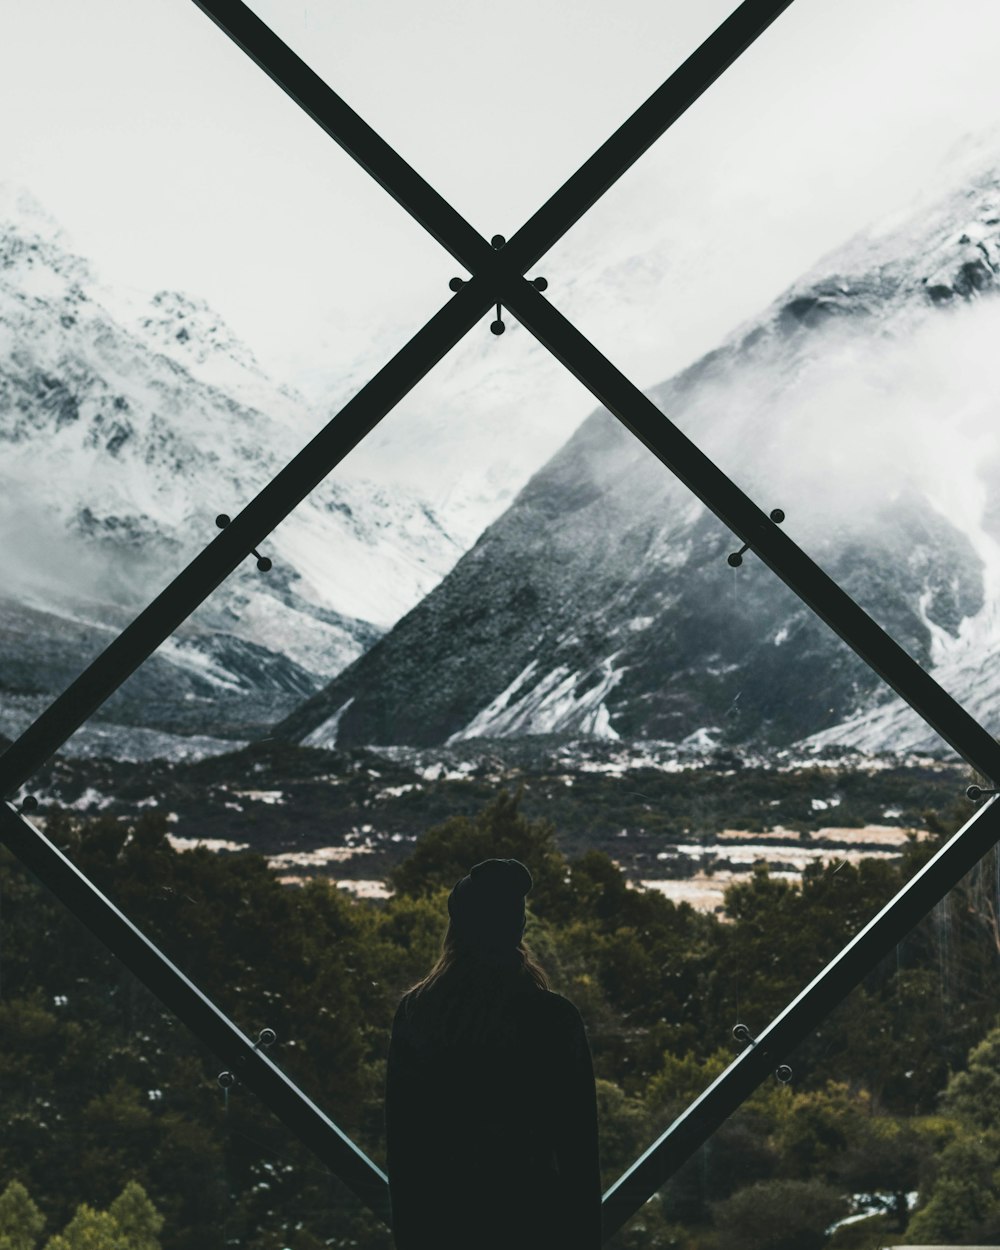 pessoa em pé no vitral olhando através da montanha coberta de neve